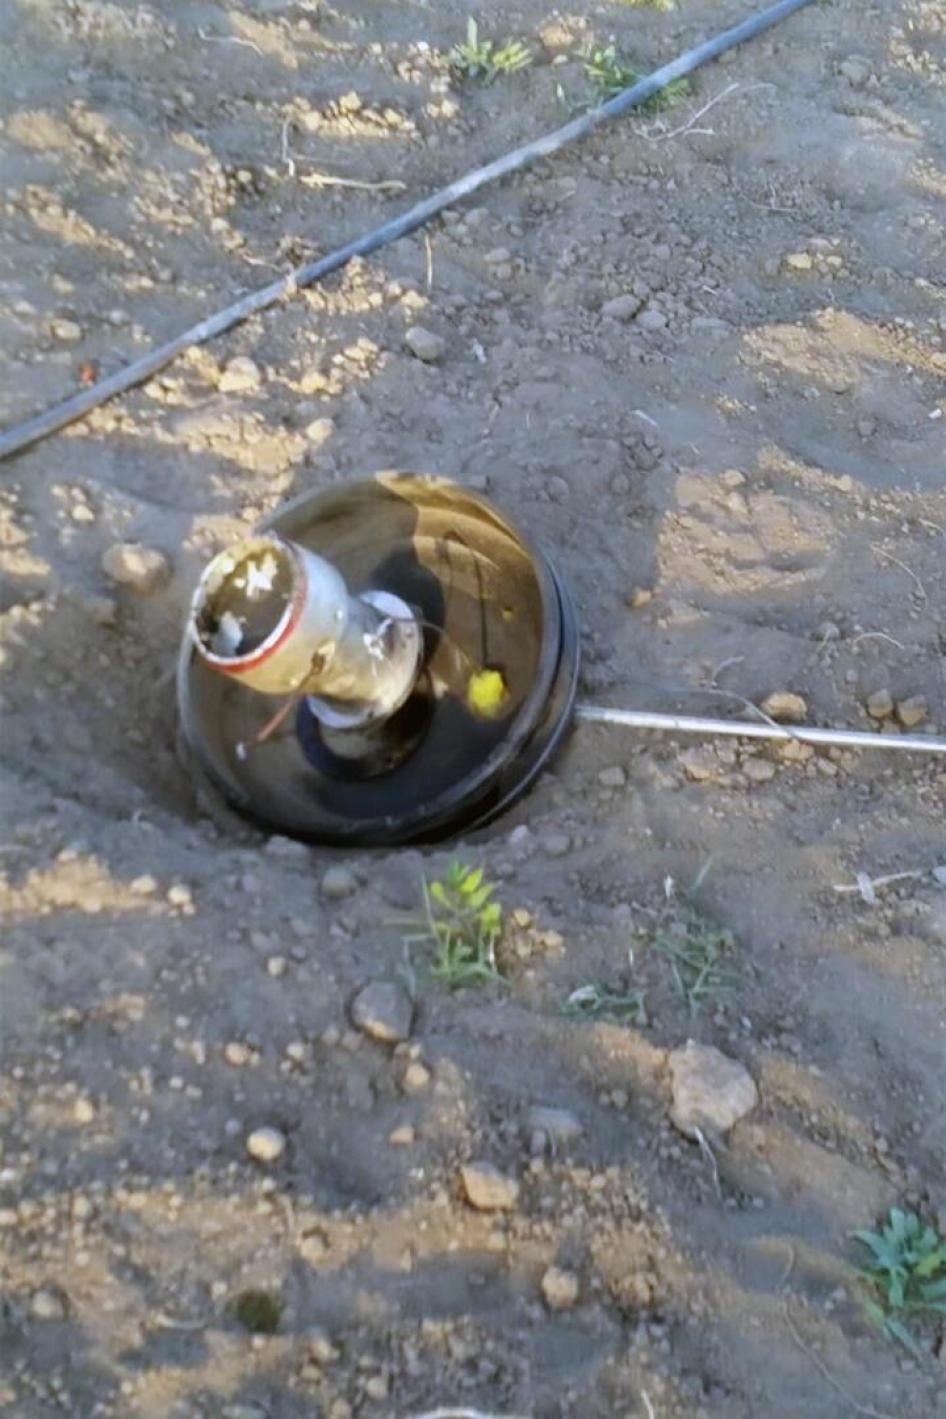 قطعة من آلية تفجير صاروخ أستروس للذخائر العنقودية واقعة في المكان الذي ذكره شهود في قحزة بمحافظة صعدة في 22 فبراير/شباط 2017. 